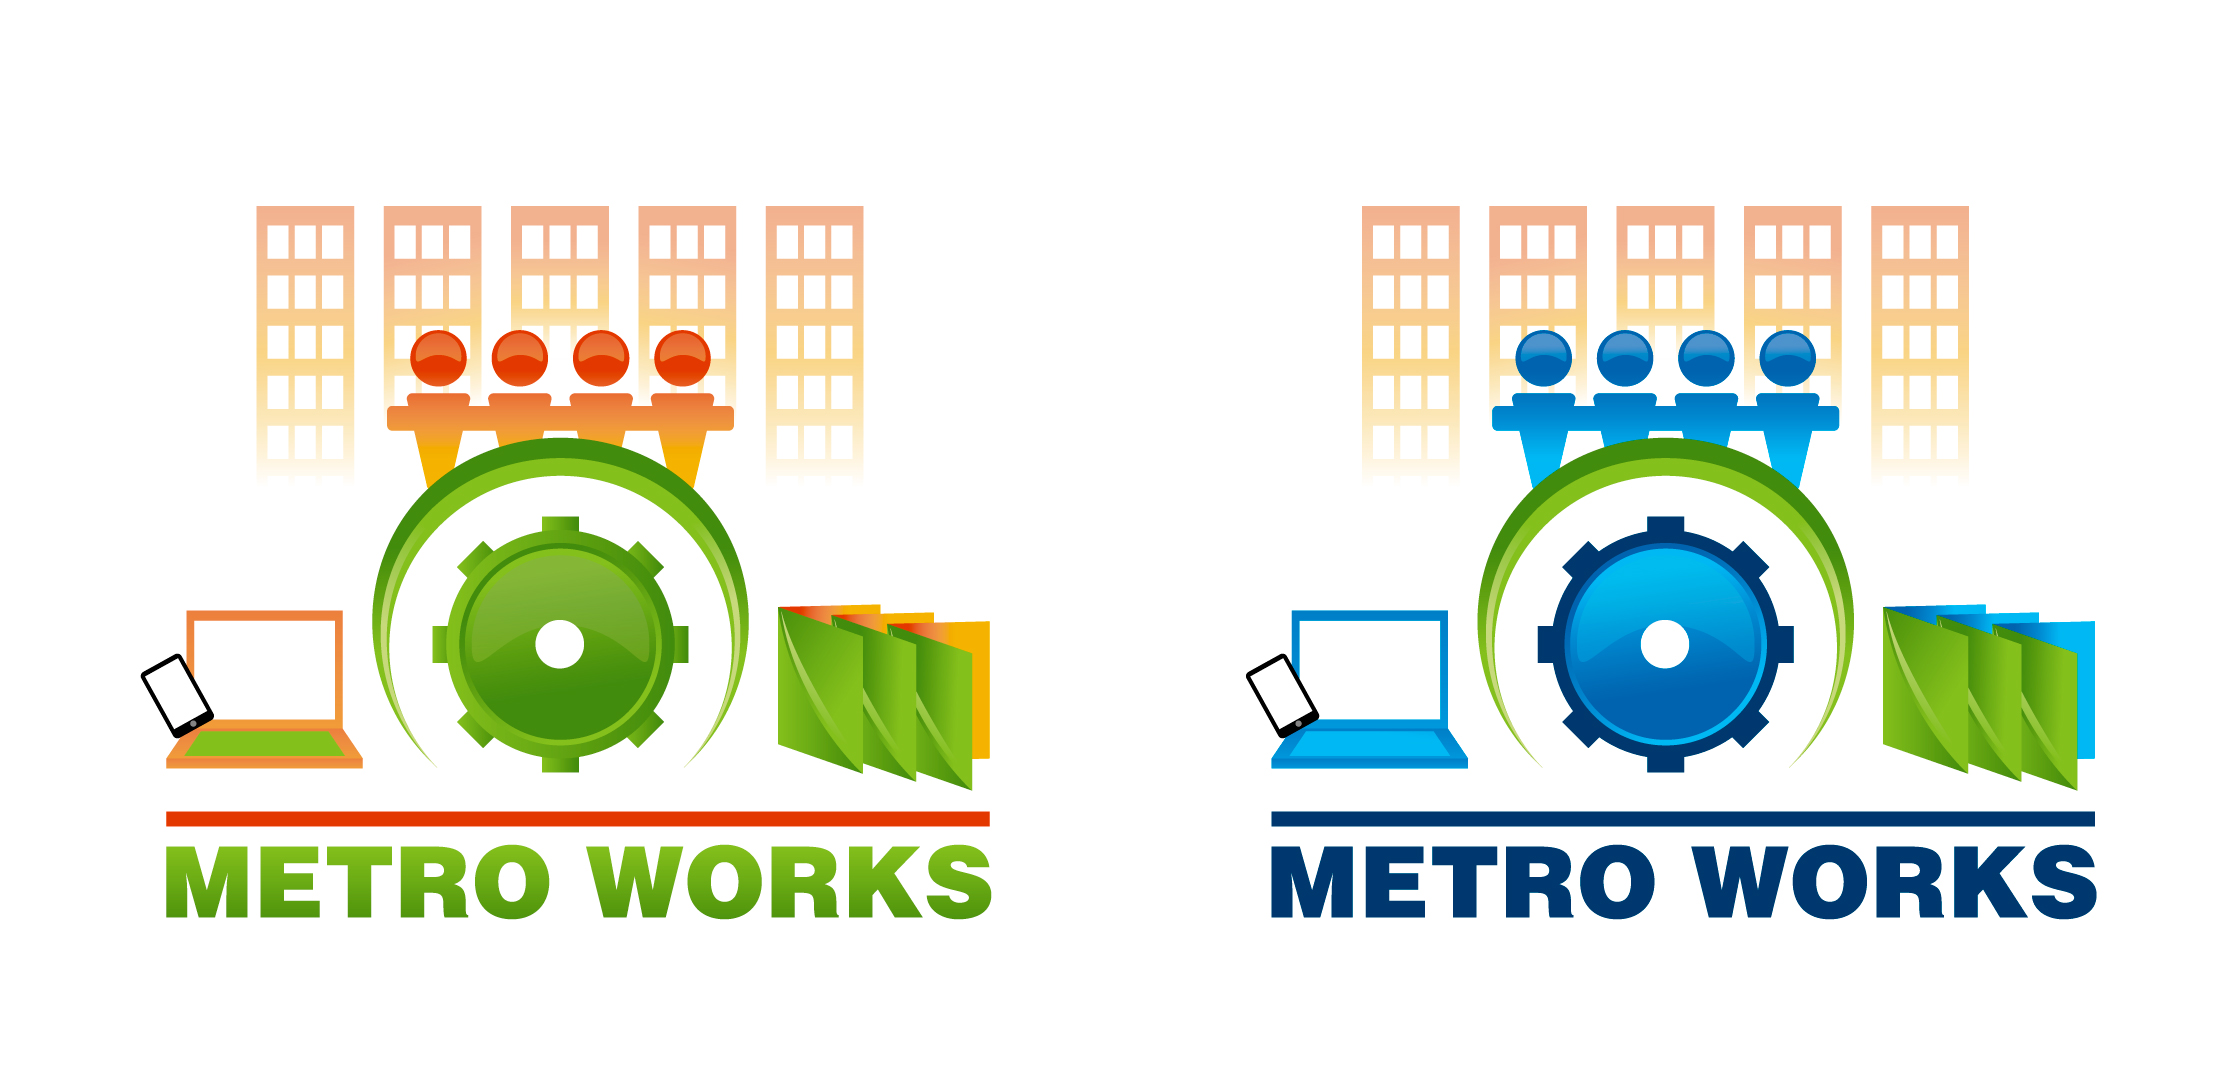 MetroWorks